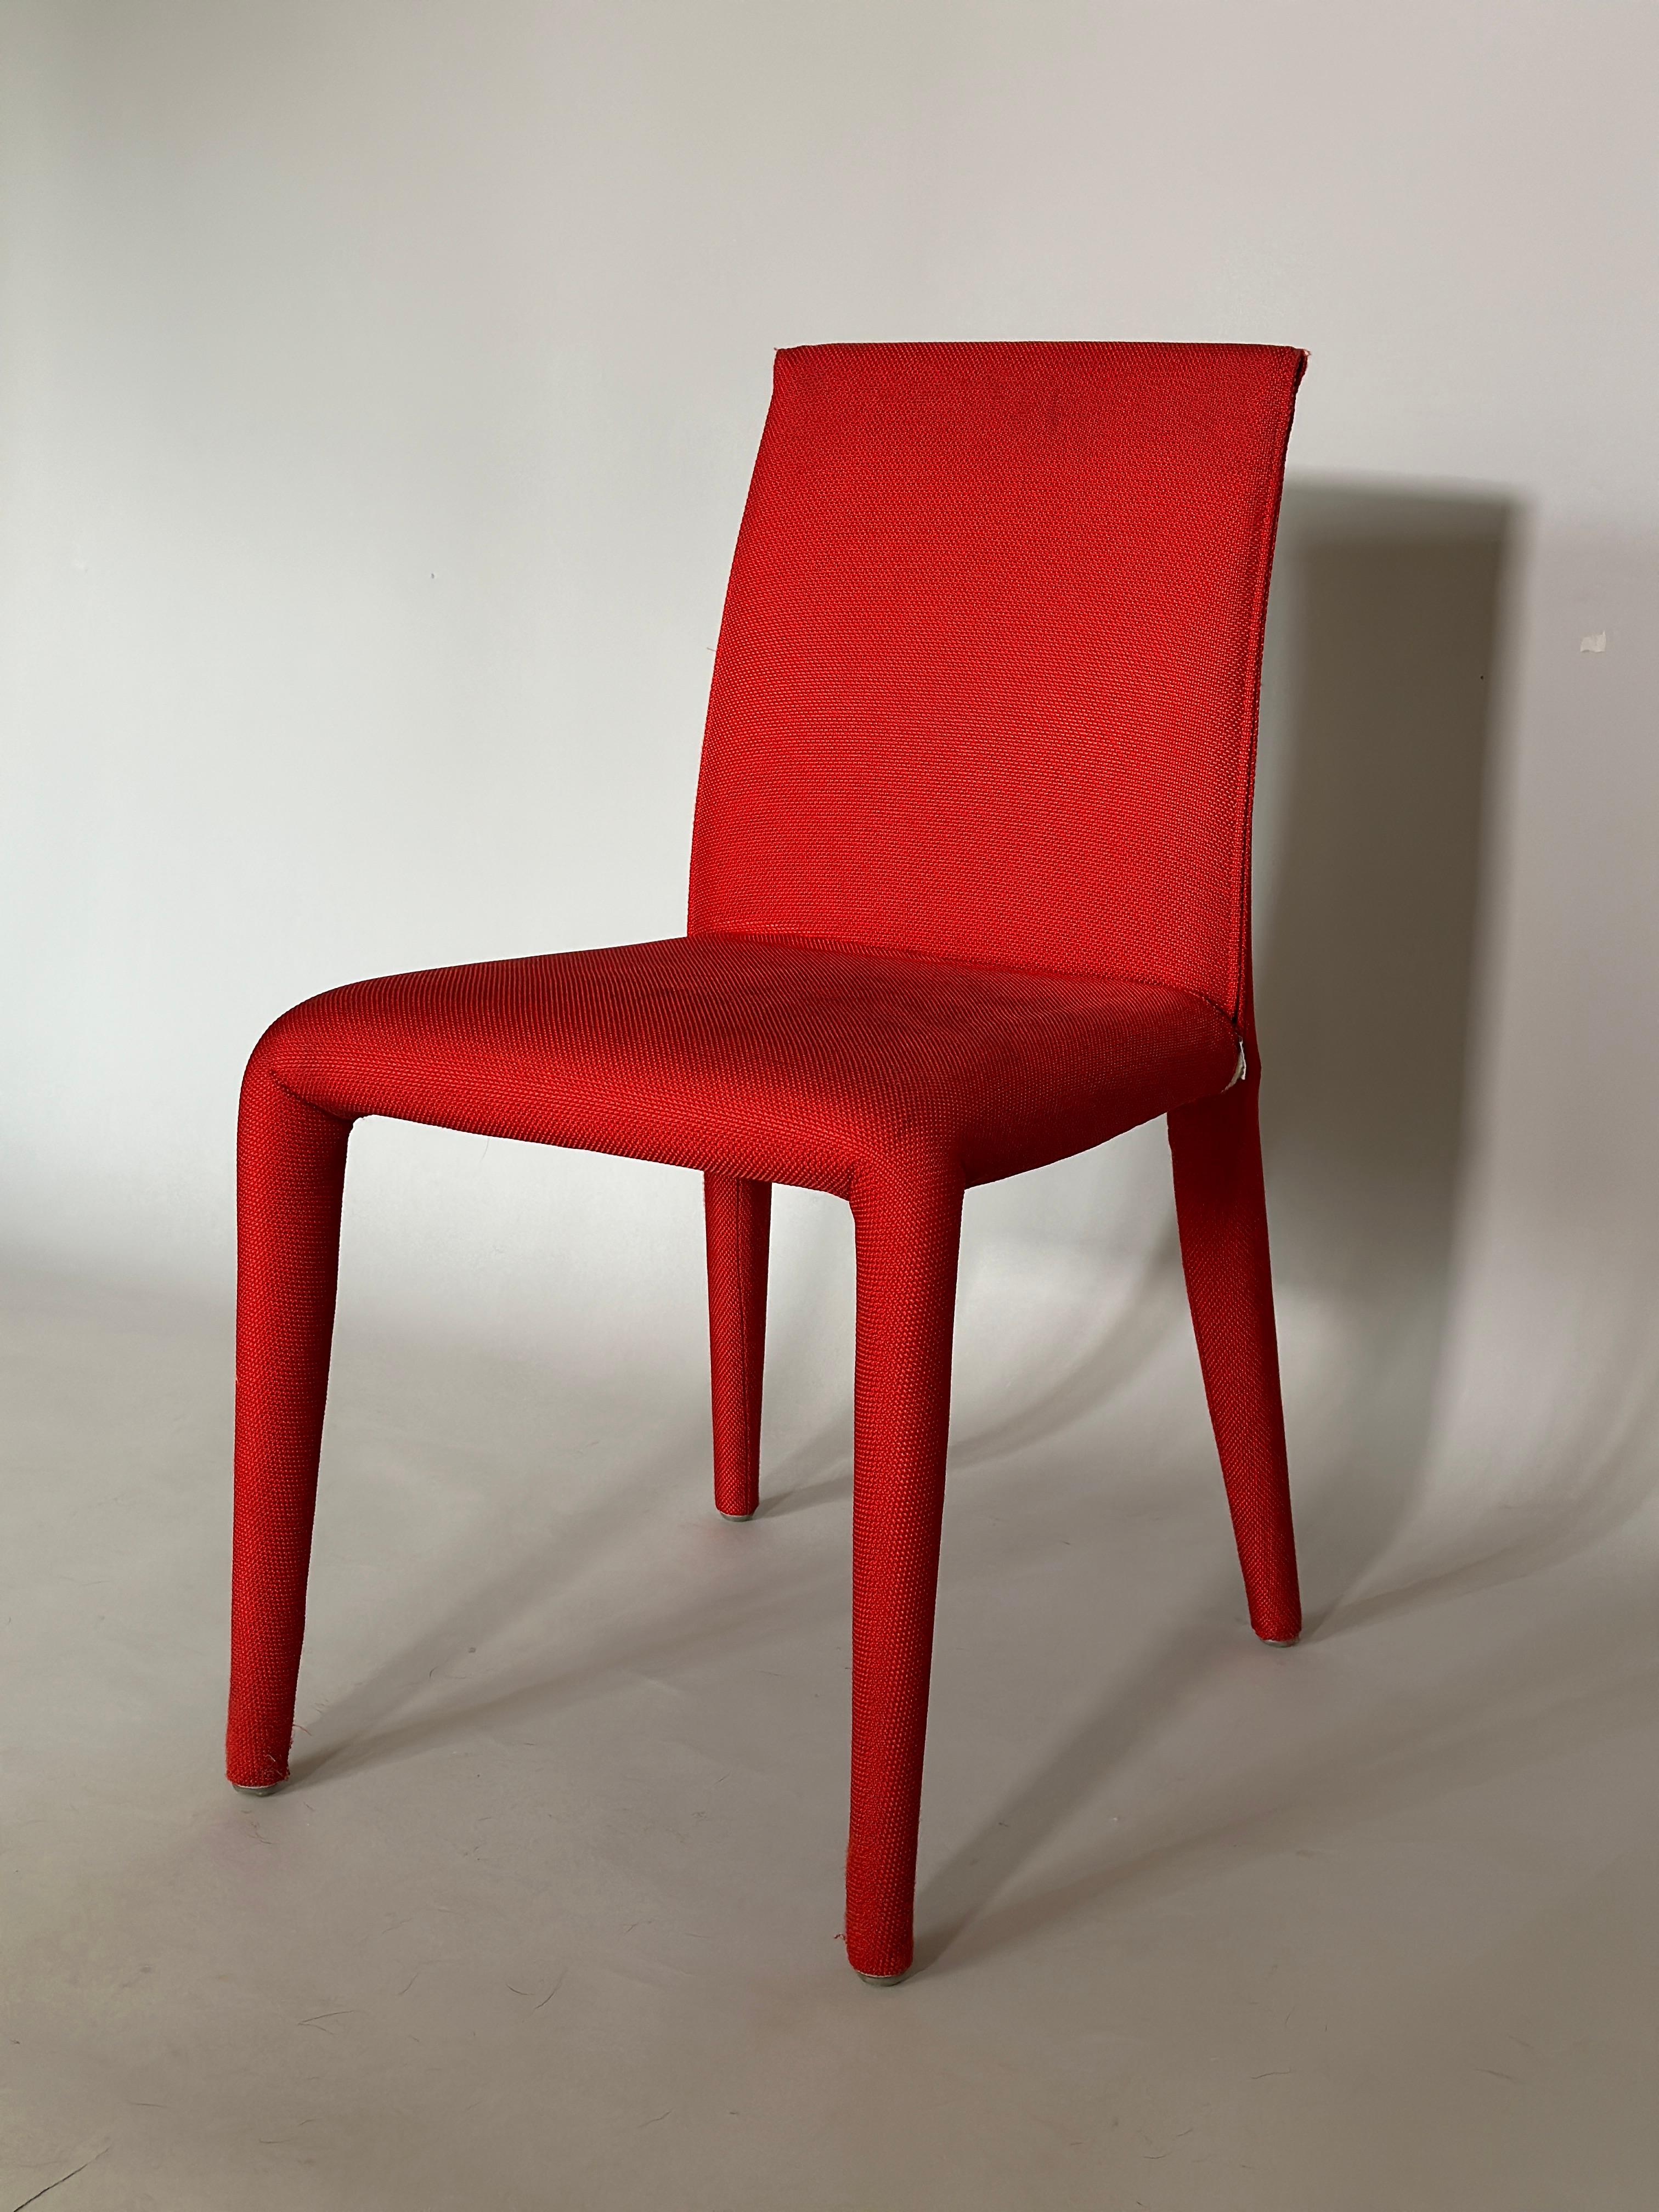 Ensemble de quatre chaises de salle à manger en tissu rouge par Mario Bellini pour B&B Italia. 
Design Modern, chaises de salle à manger rouges faboulos.